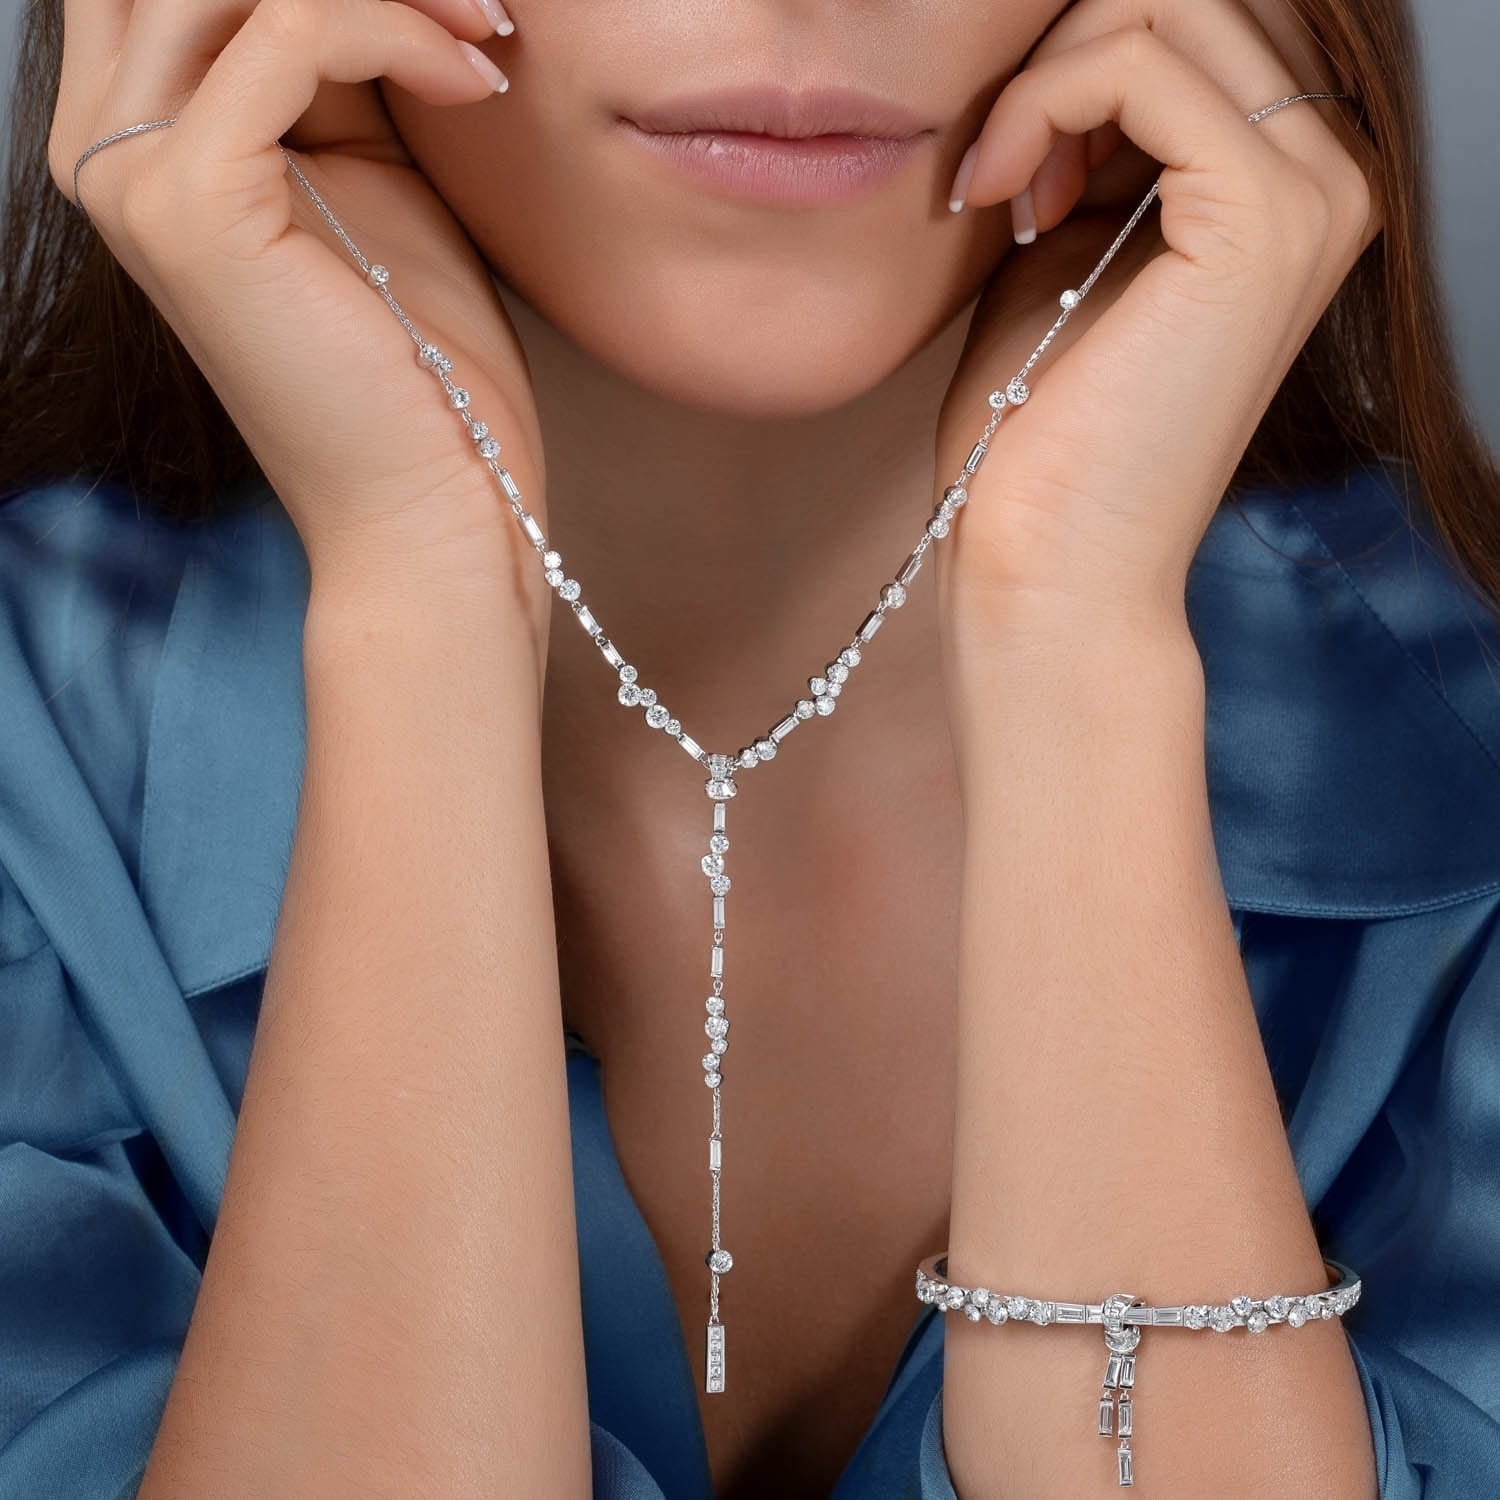 UNA All Diamond "Bride" Necklace